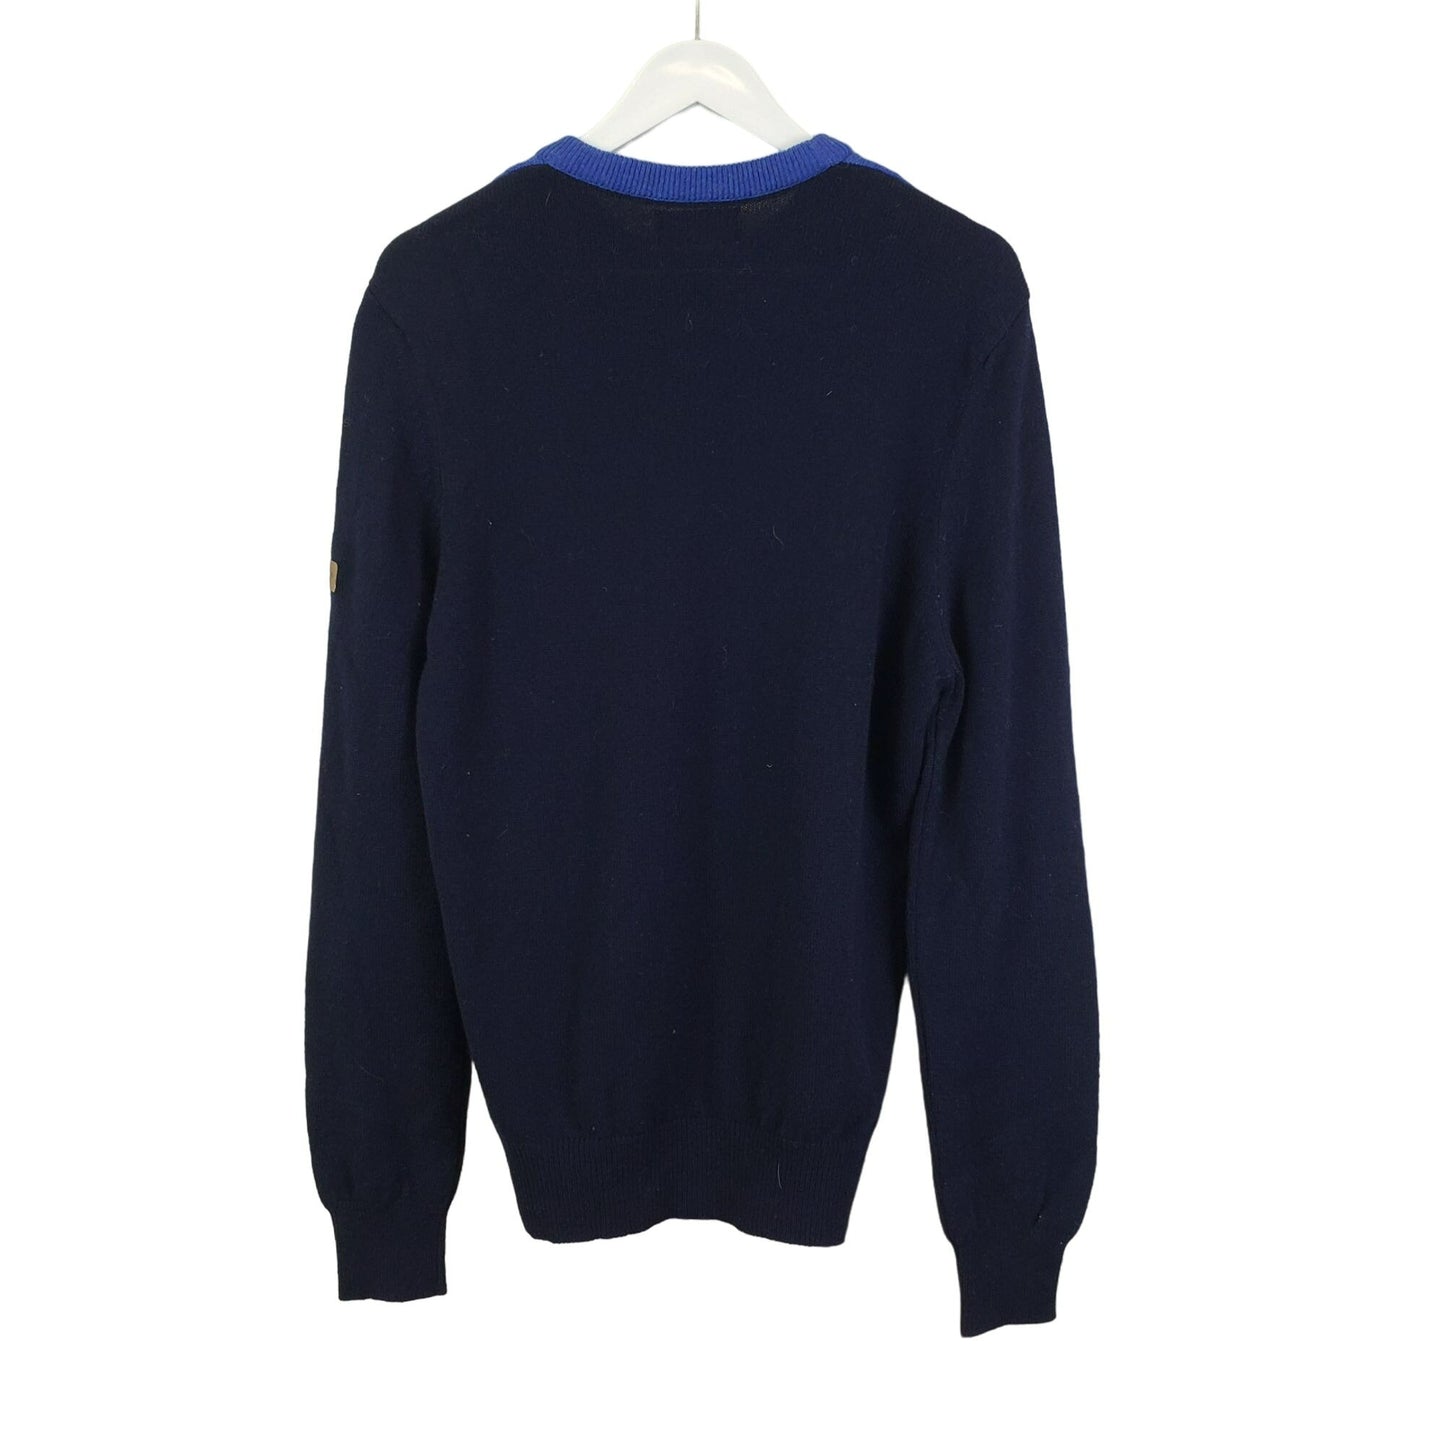 Hawick Knitwear 100% Lambswool Sweater Size Medium